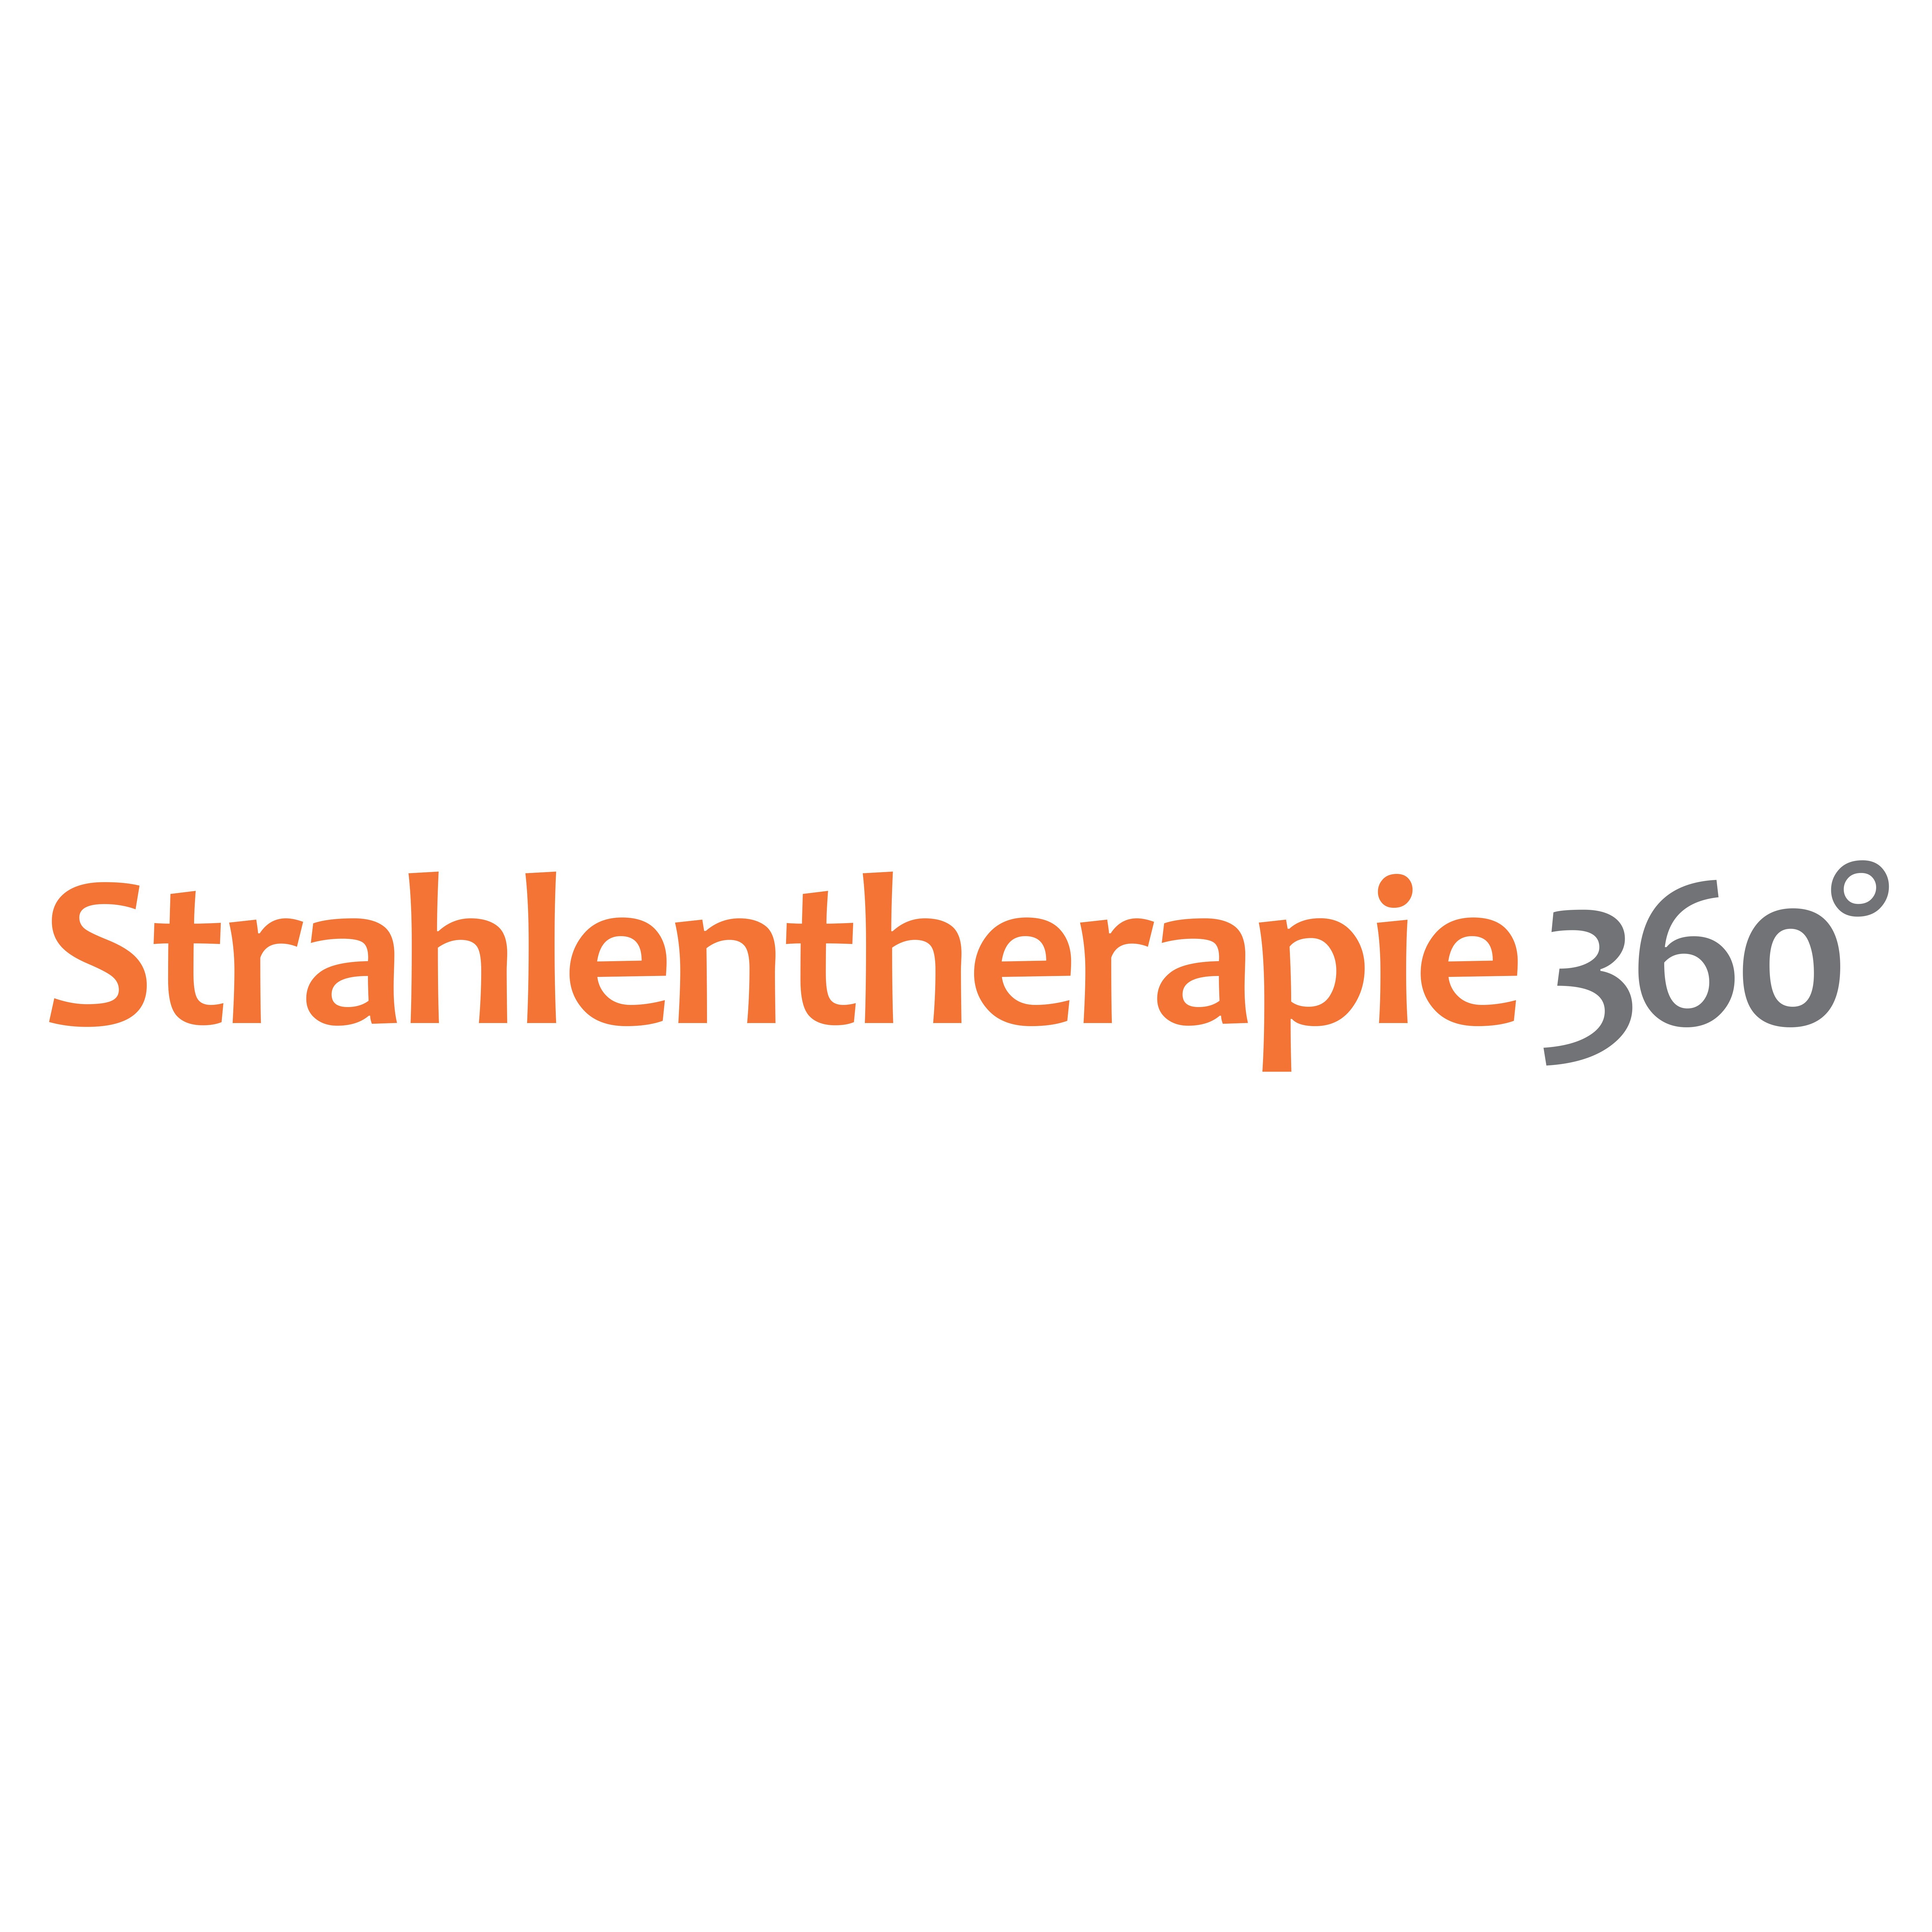 Strahlentherapie 360° - Praxis am Sana-Klinikum in Remscheid in Remscheid - Logo